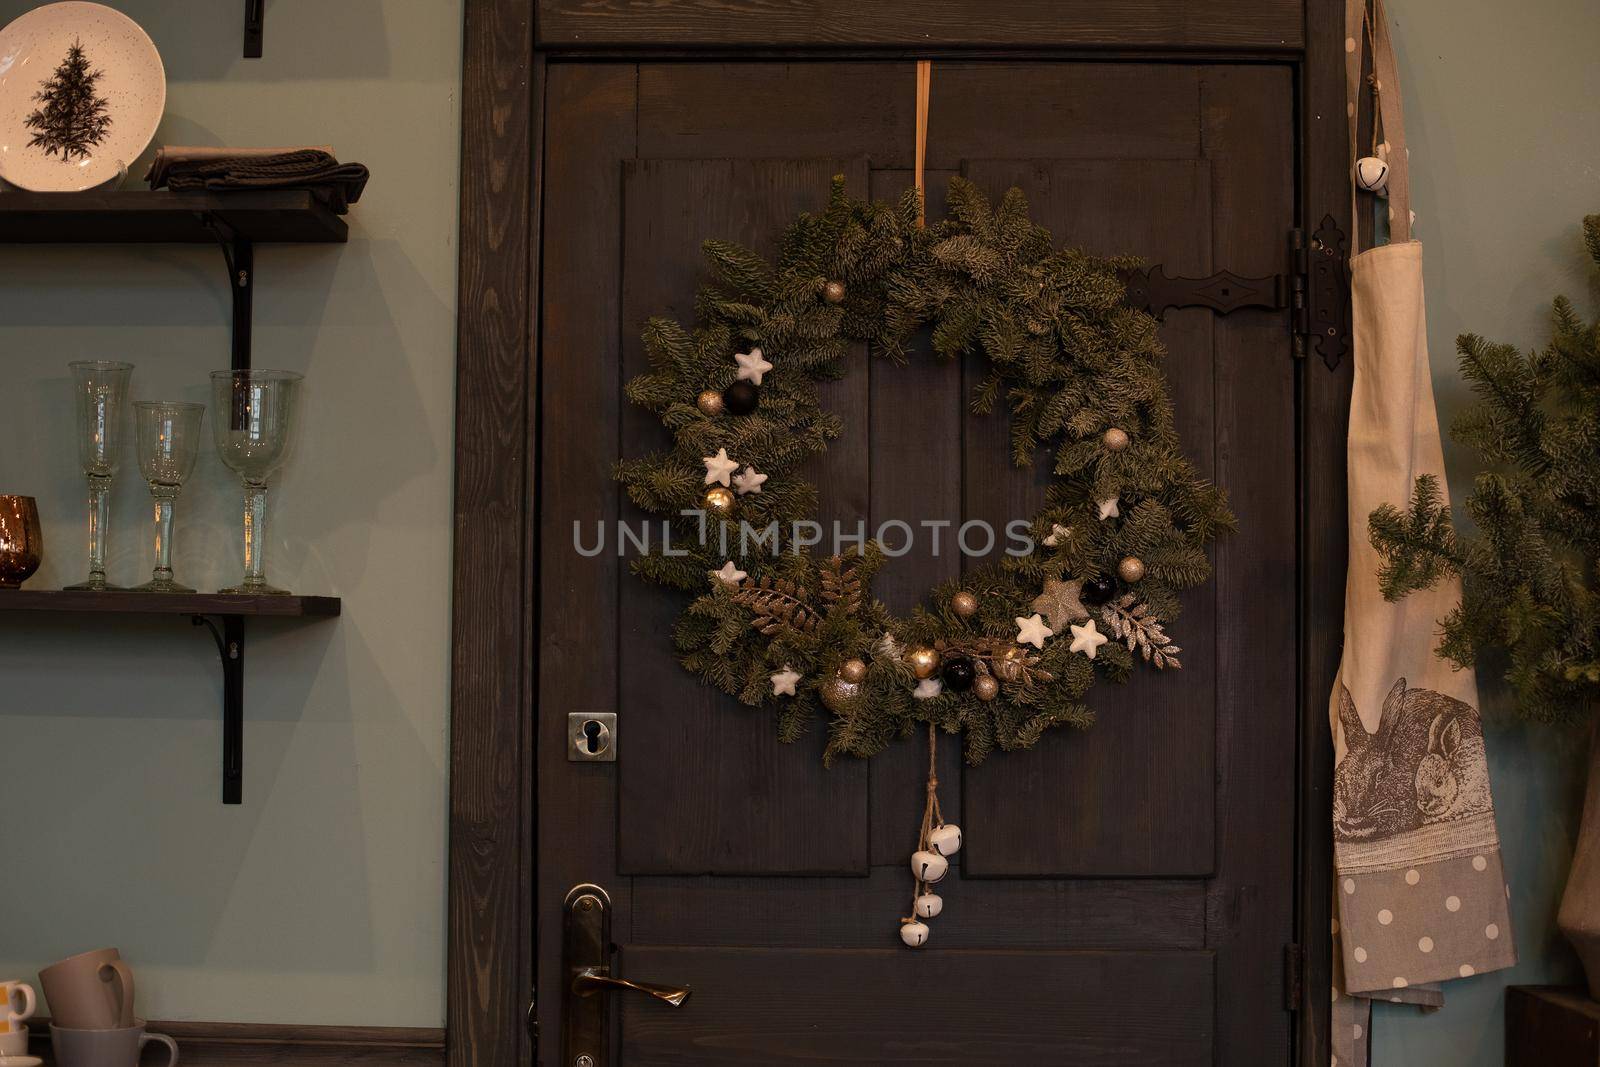 Close-up of fir tree Christmas wreath with decorations hanging on dark brown wooden front door of a house. Decorated Christmas wreath on the front door.